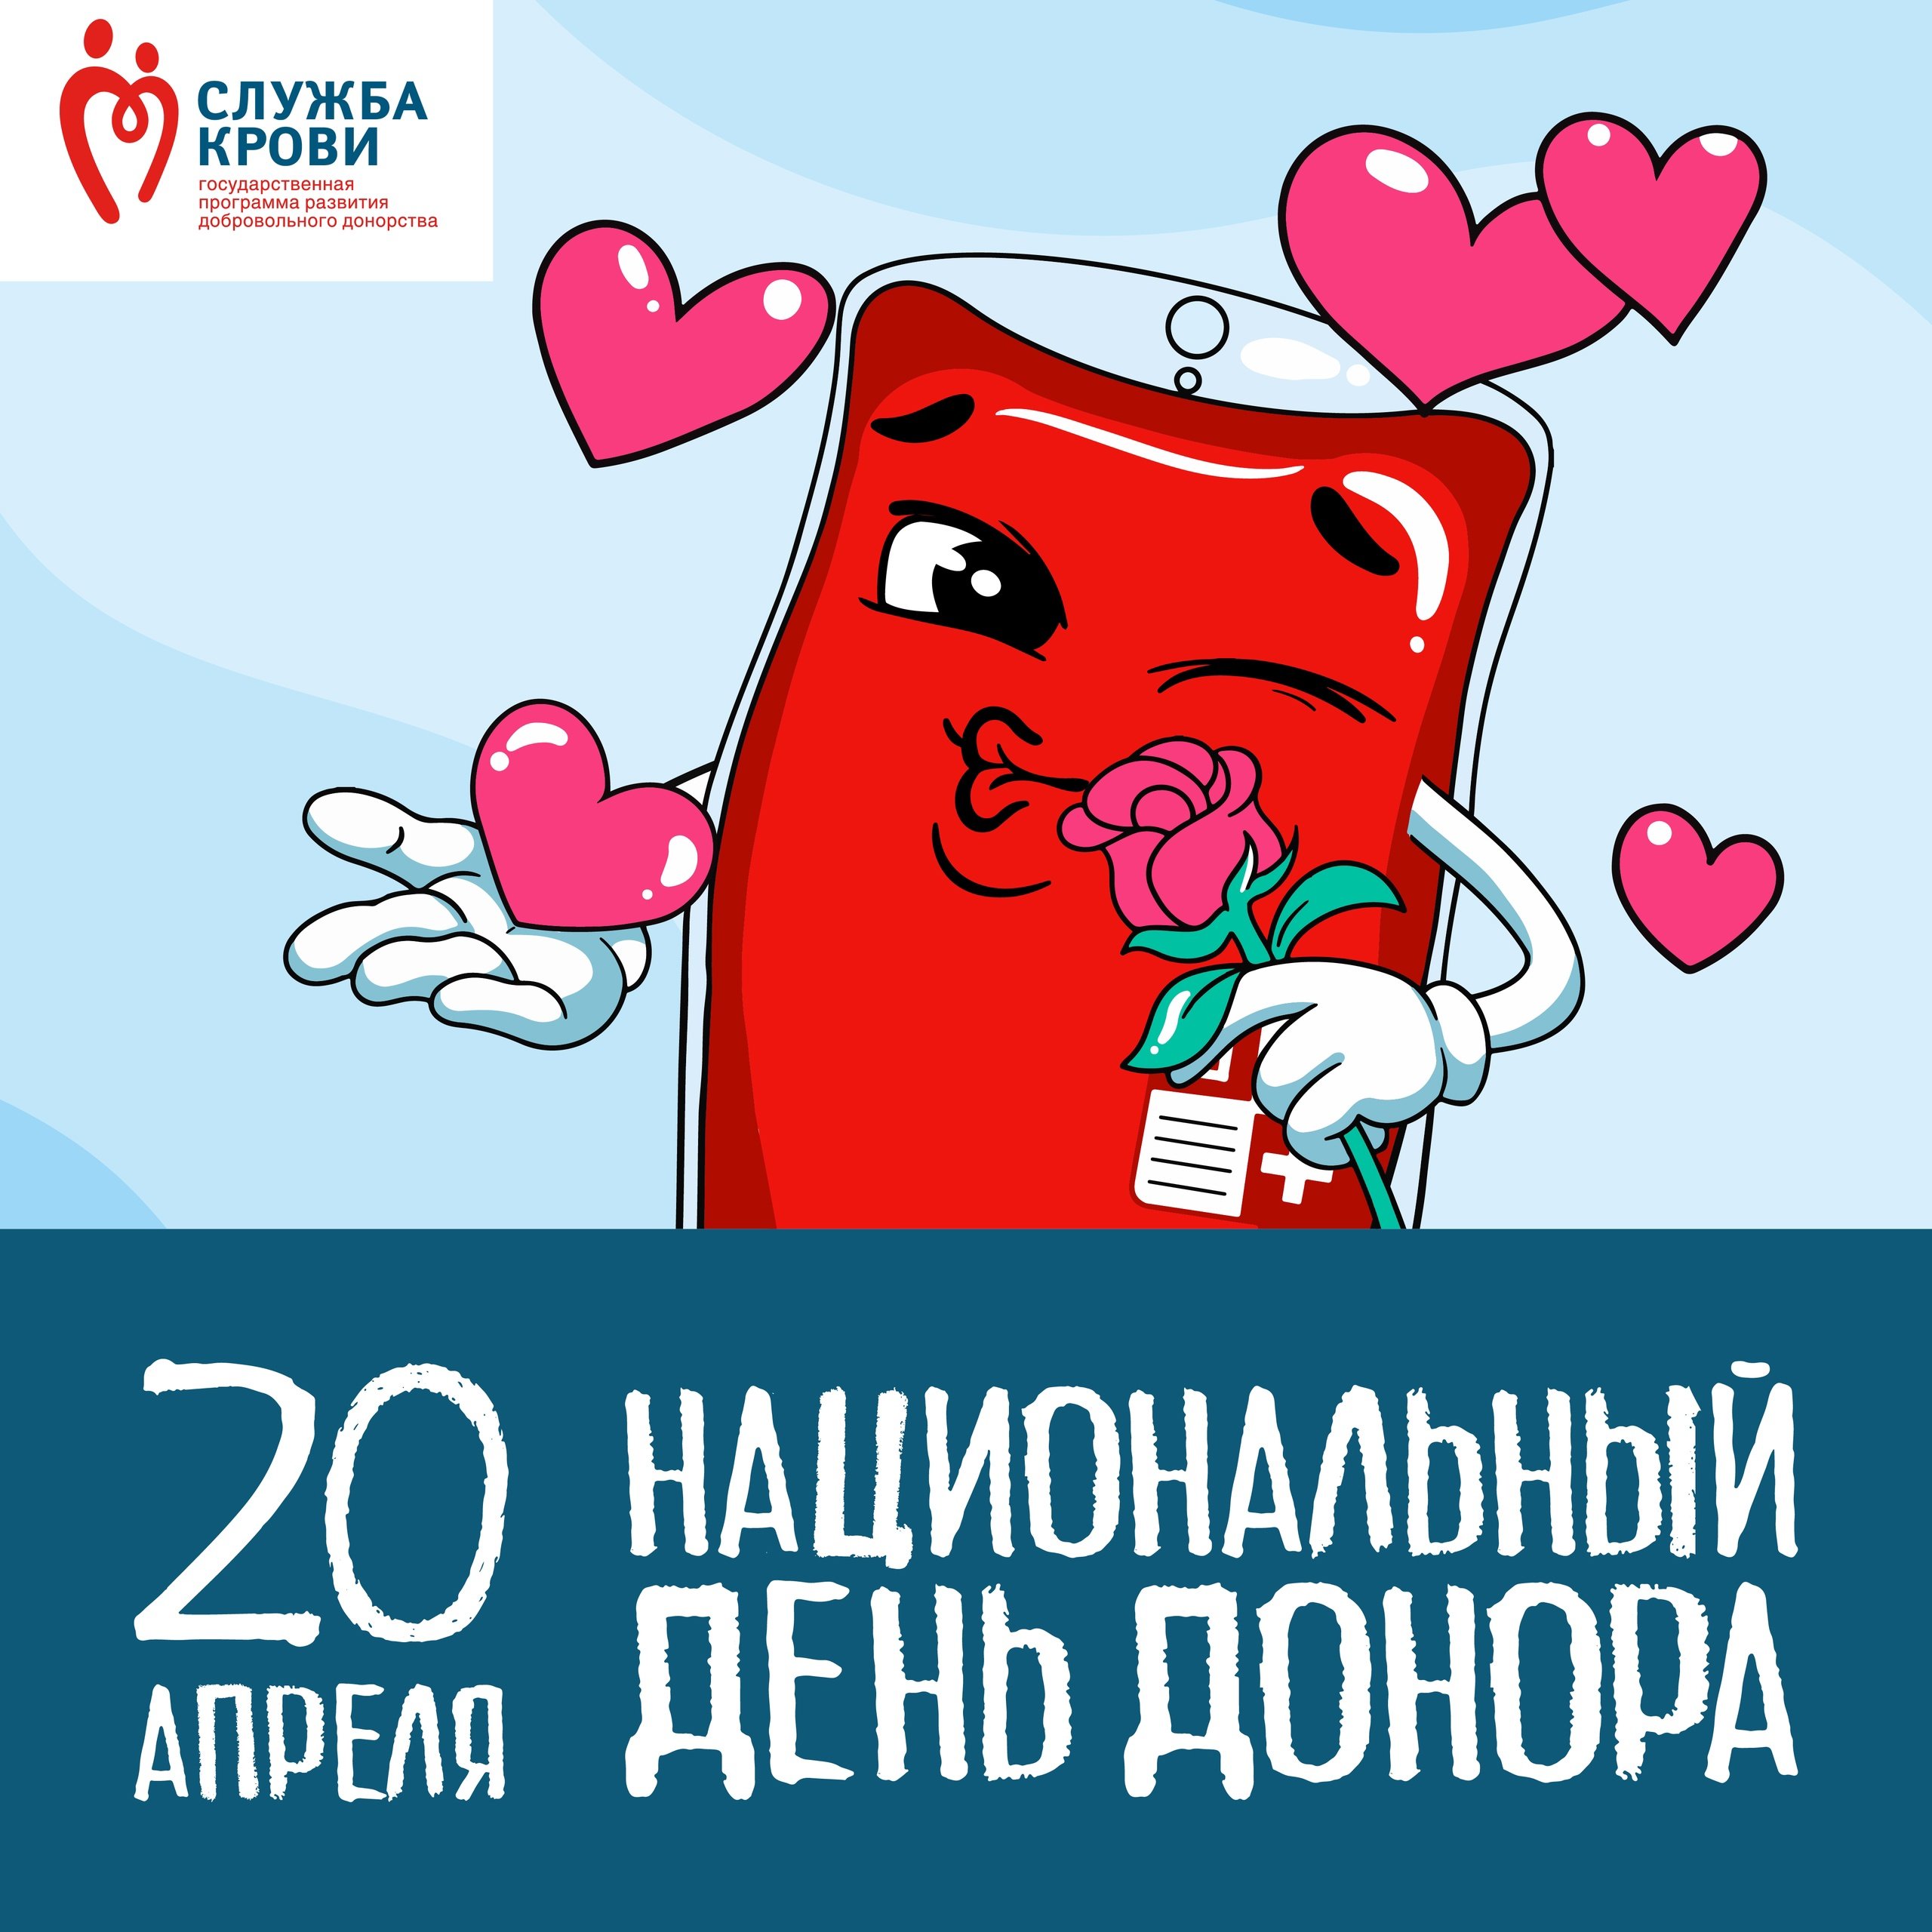 Донорство сегодня. Национальный день донора. 20 Апреля национальный день донора. С праздником донора крови. День донора крови в России.